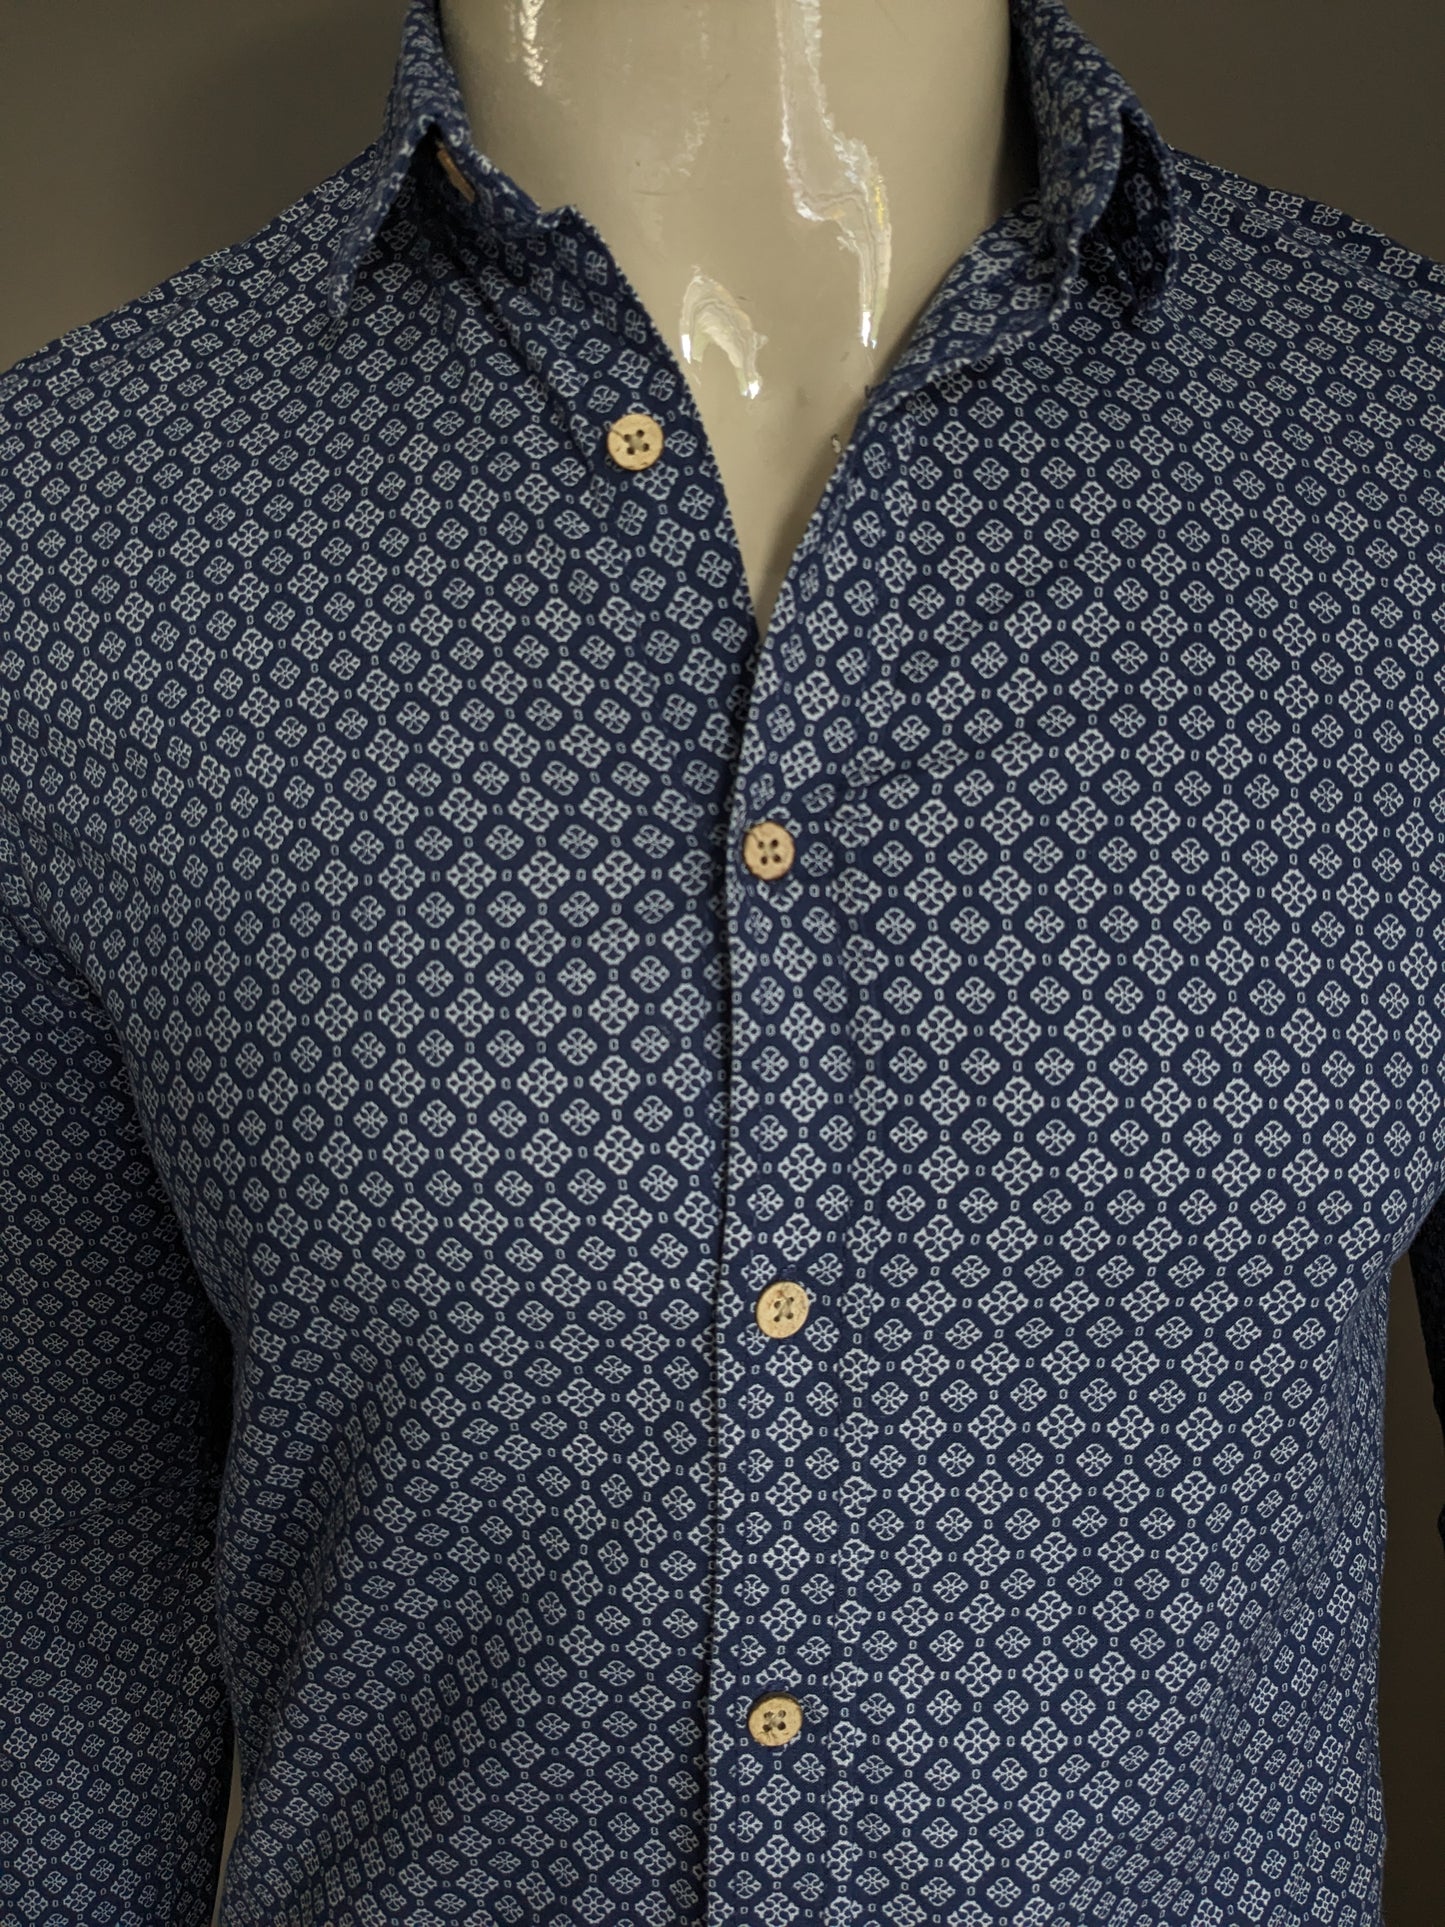 Tom Tailor Denim overhemd. Blauw Witte print. Maat S.